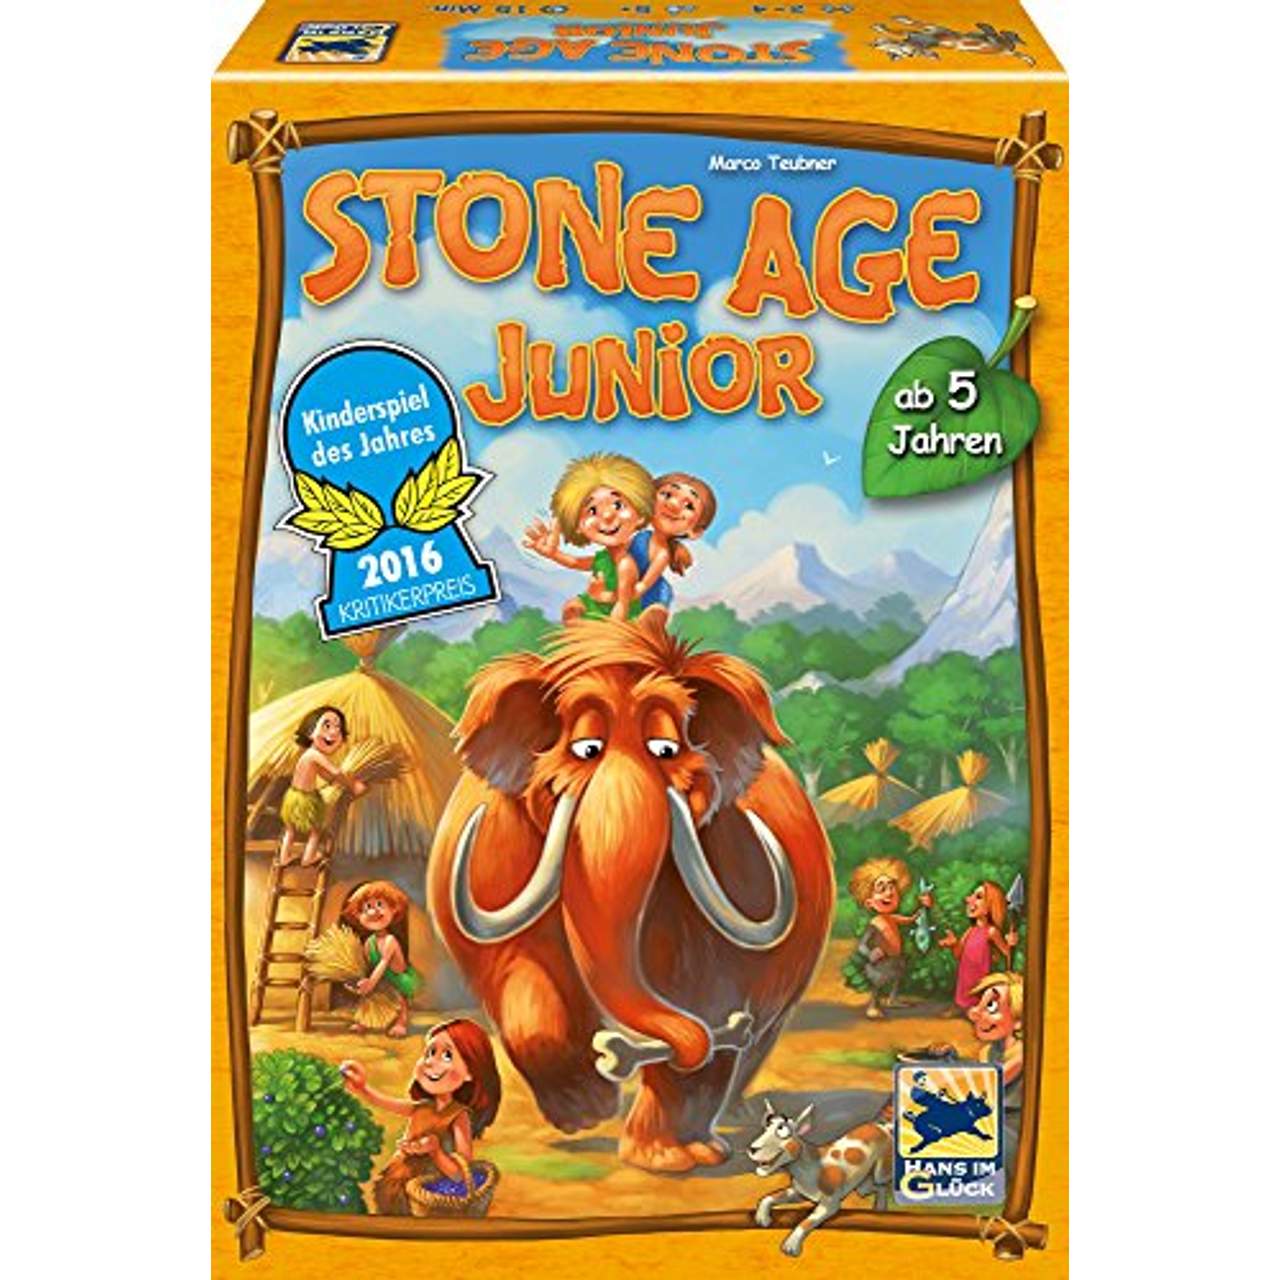 Stone Age Junior, Kinderspiel des Jahres 2016